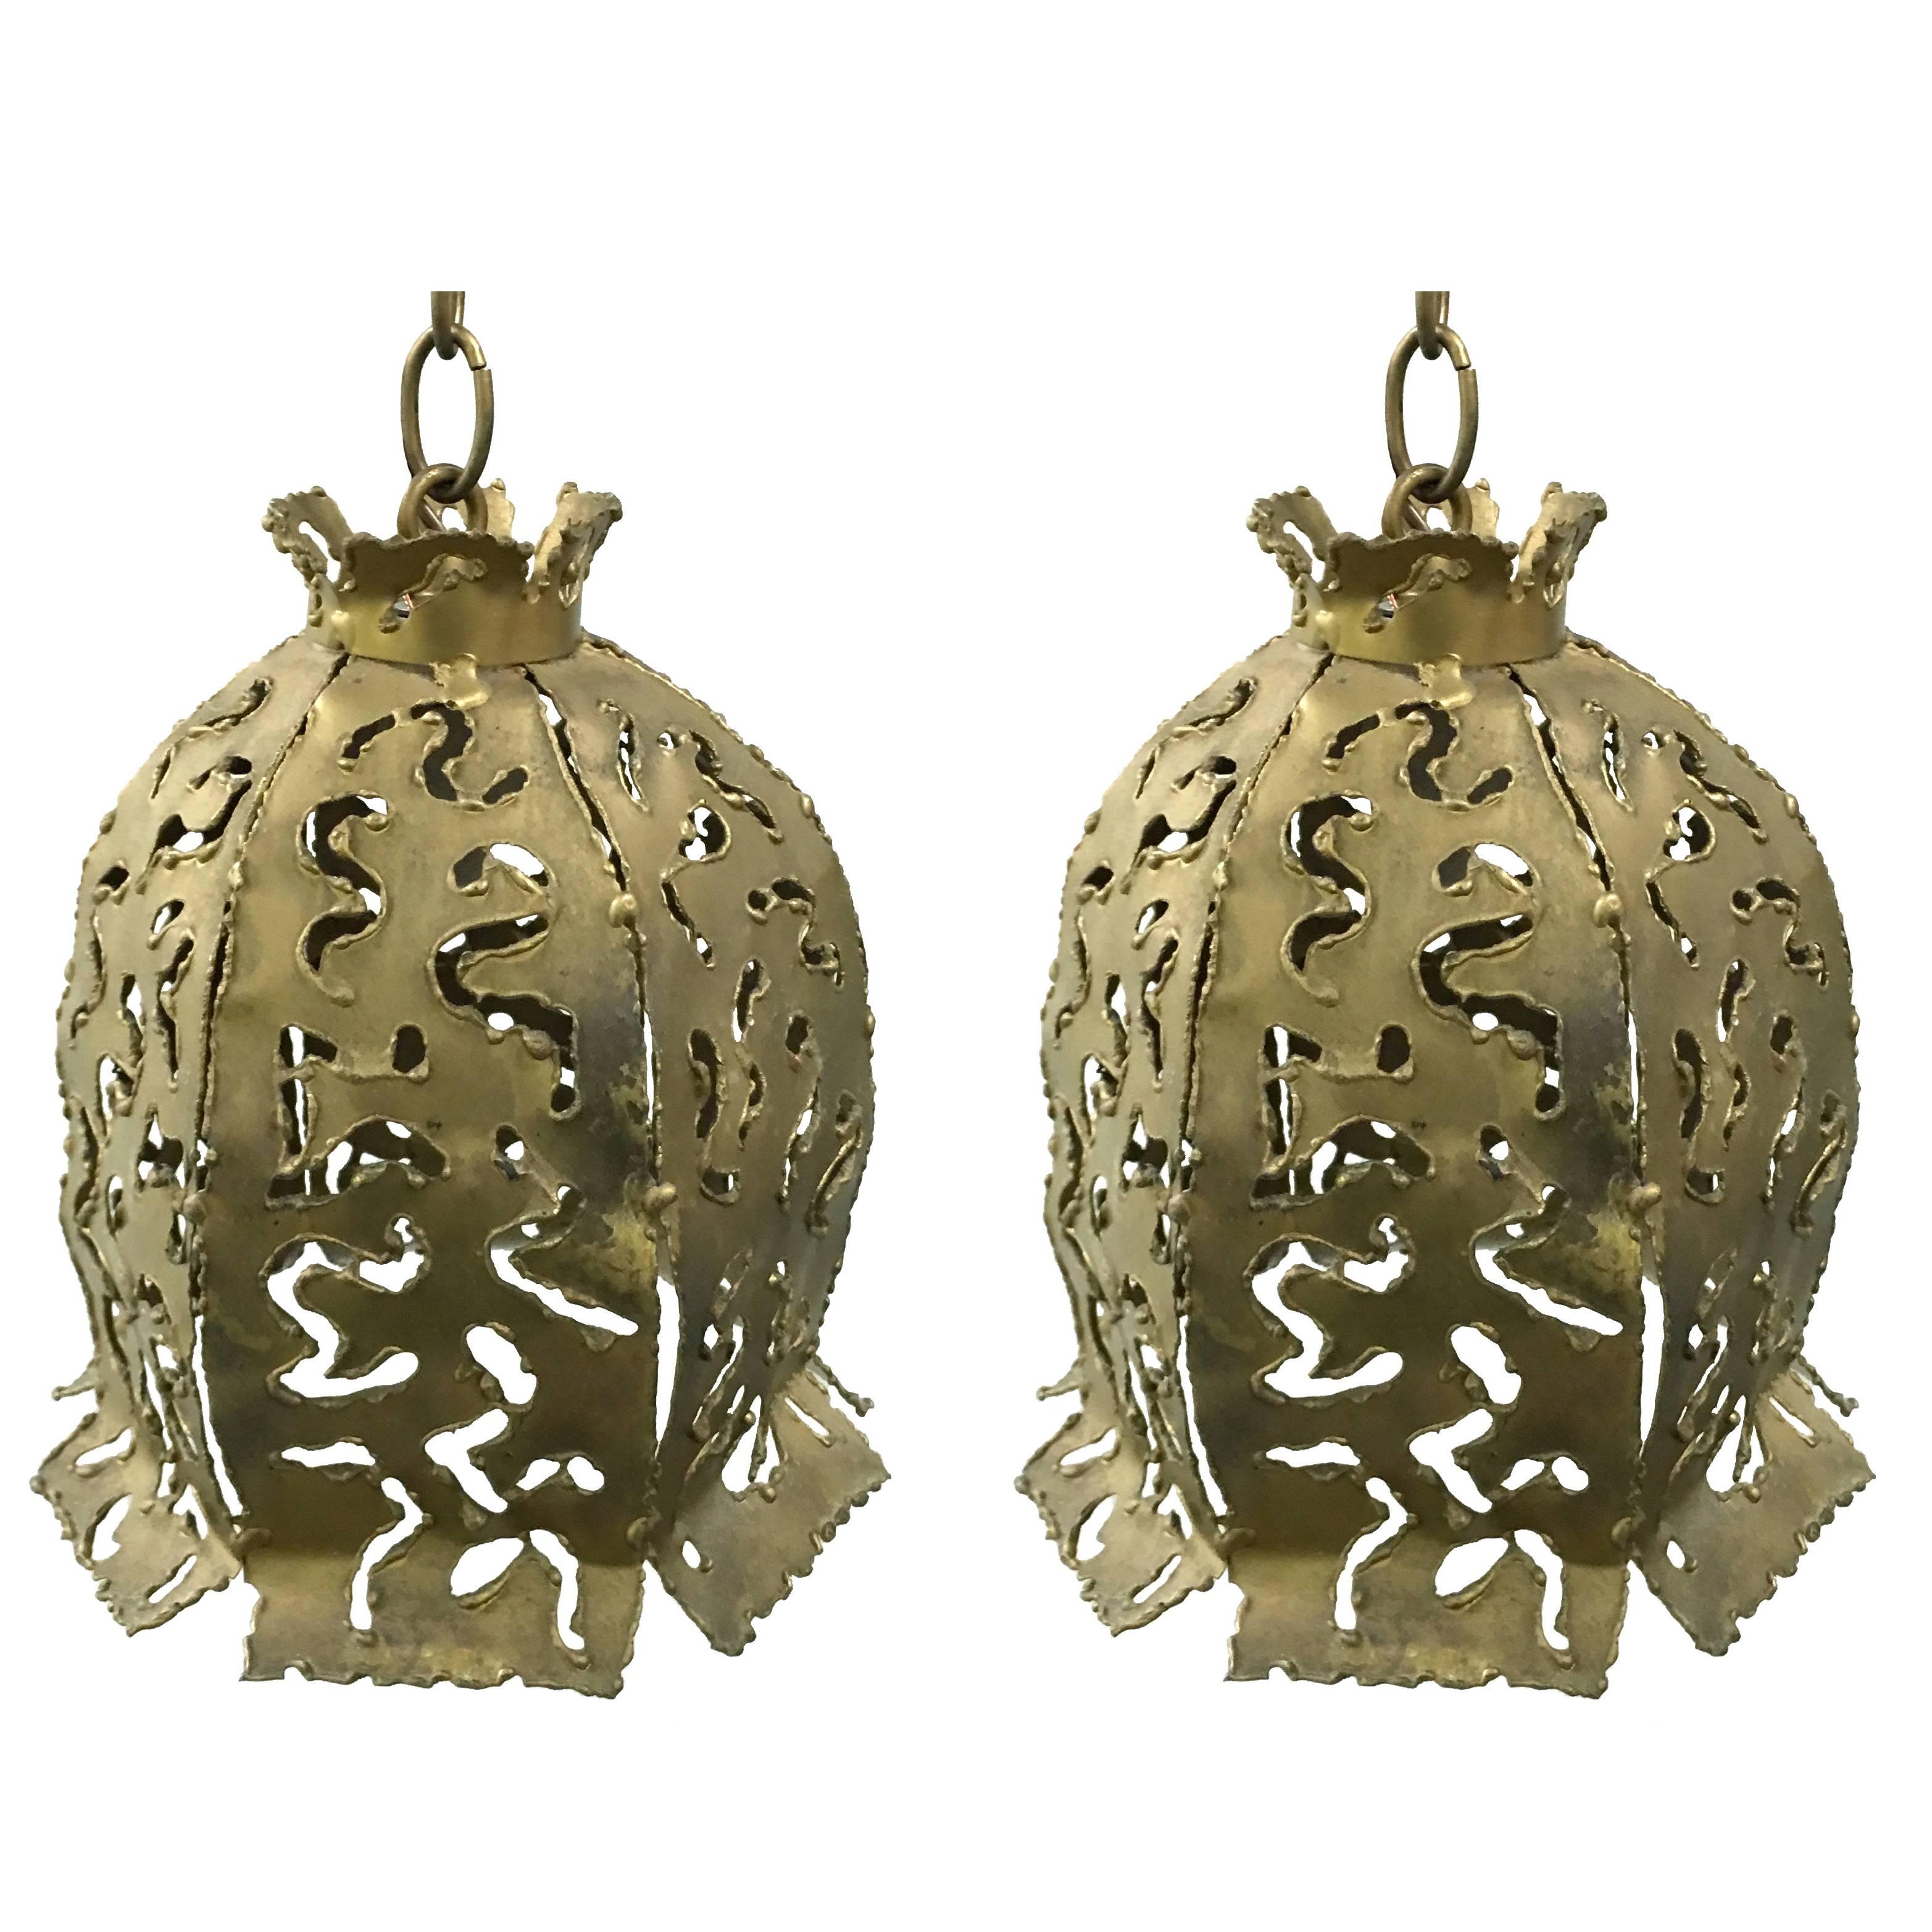 Pair of 1970s Brutalist Style Brass Pendant Lights by Tom Greene Feldman